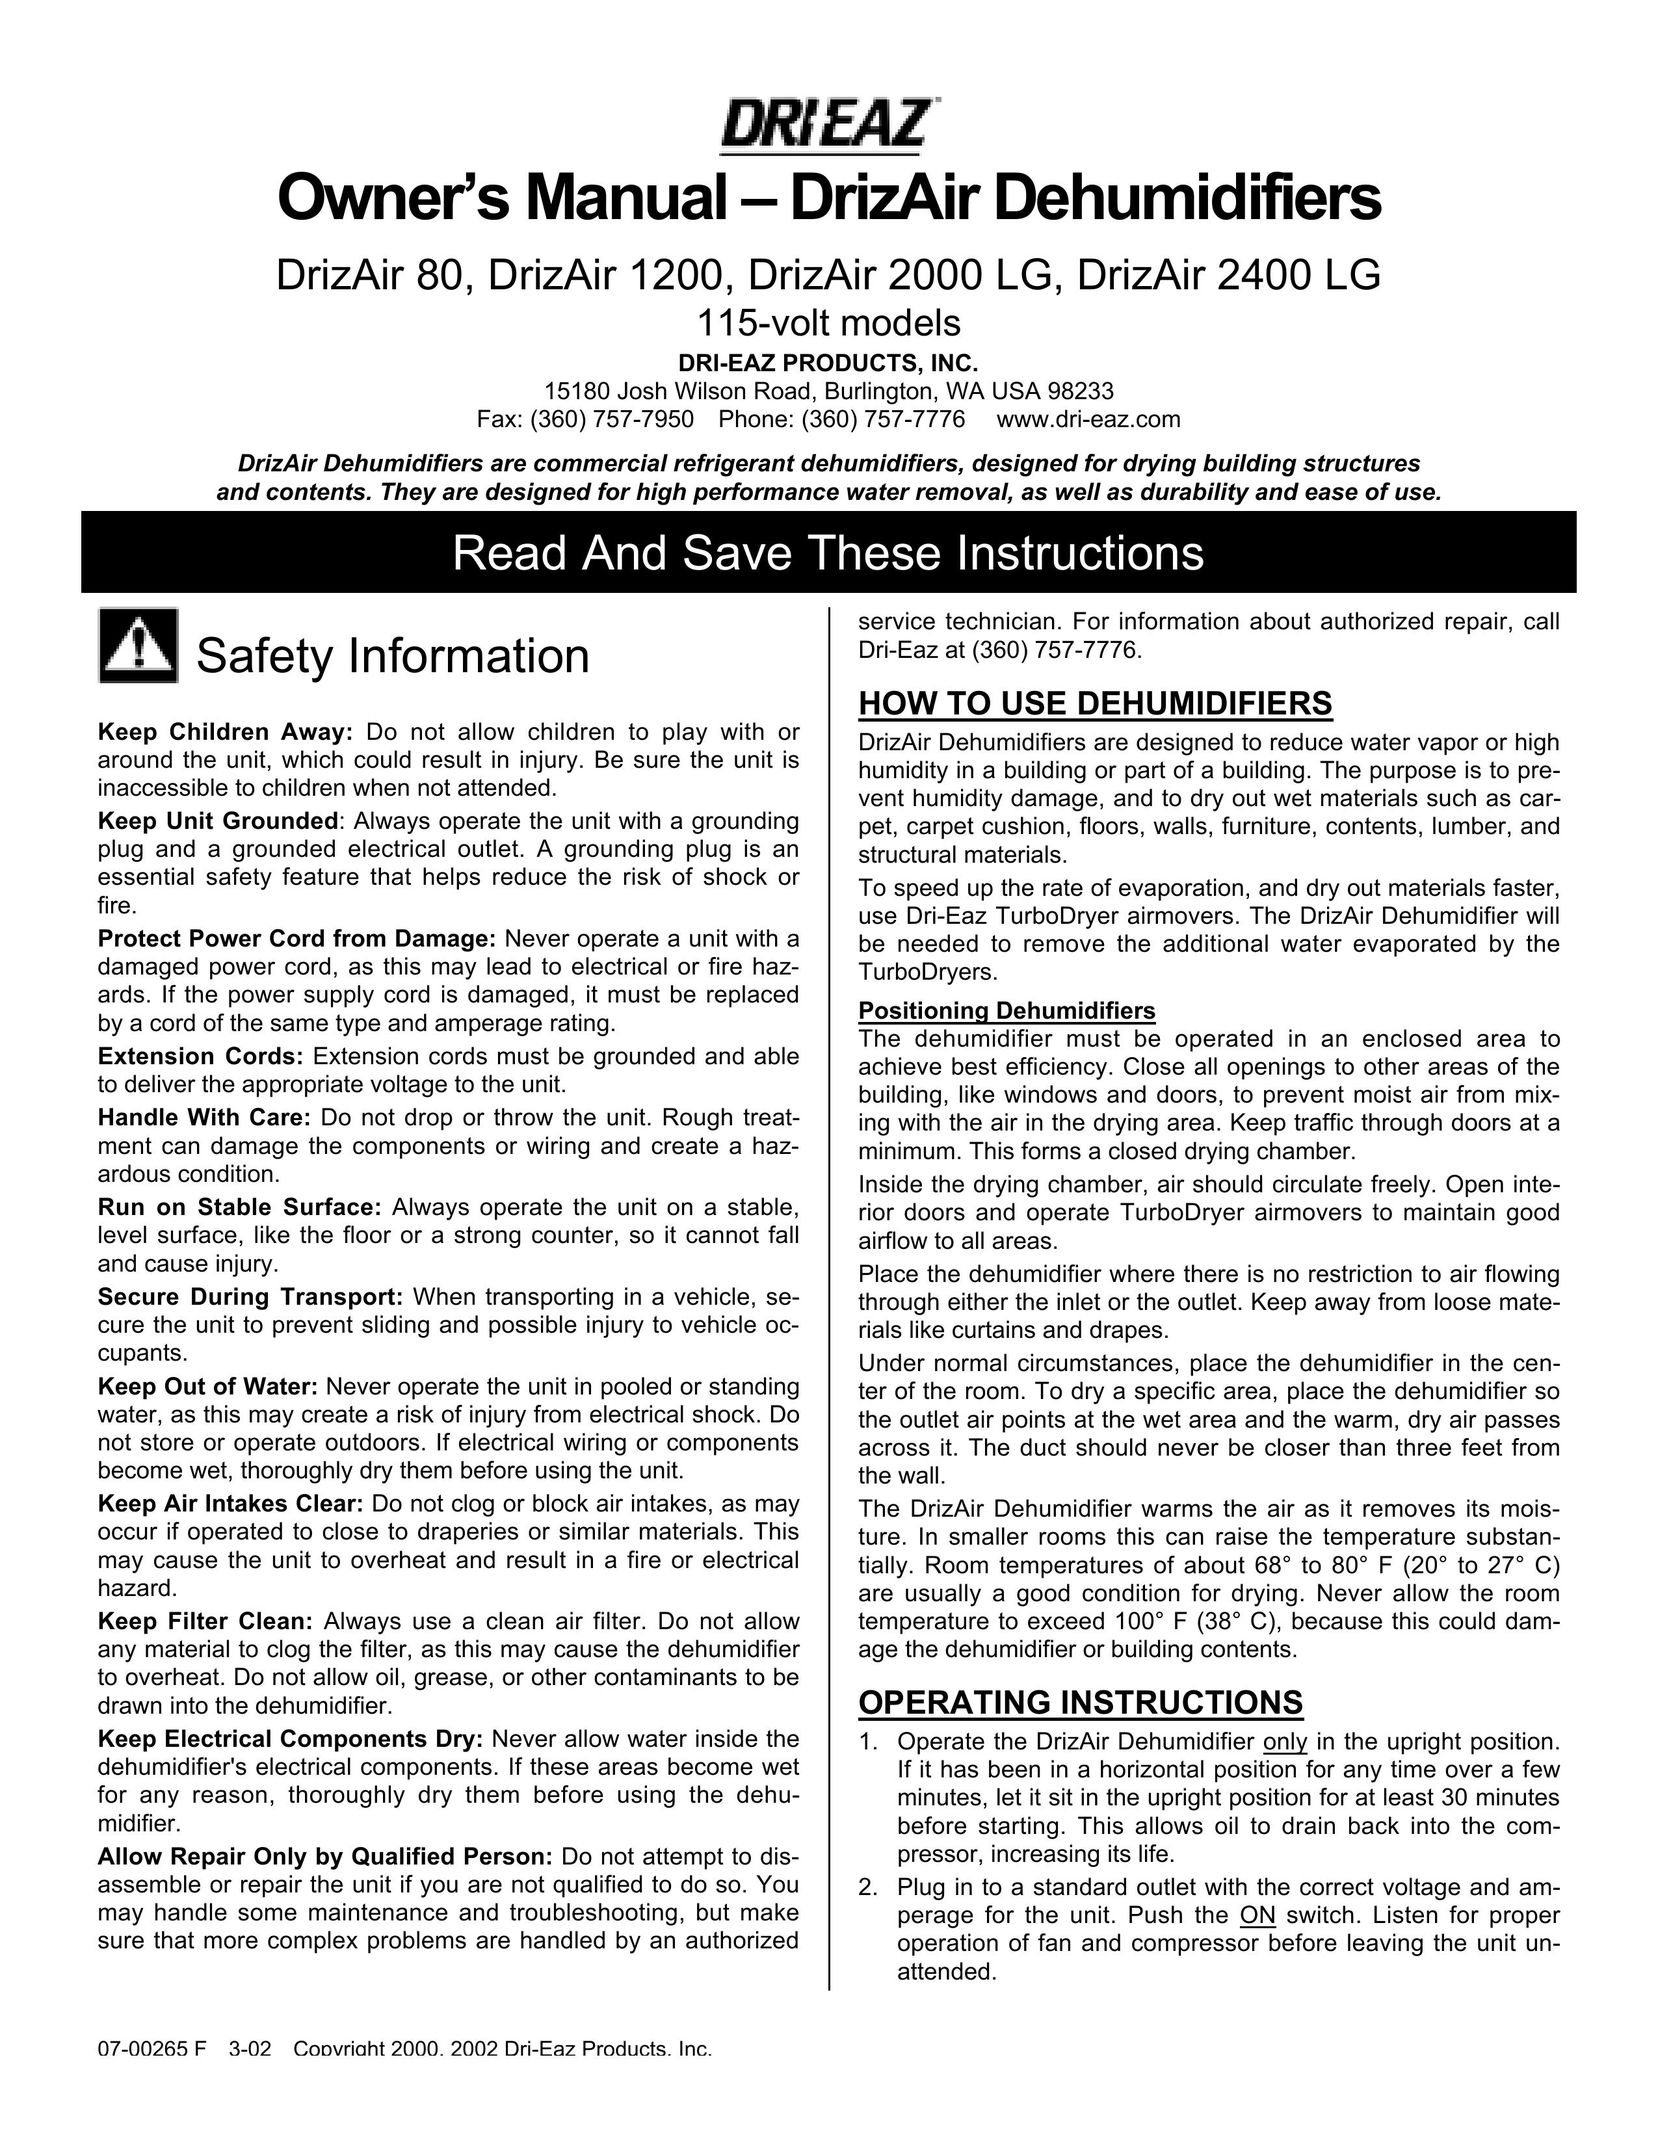 Dri-Eaz 80 Dehumidifier User Manual